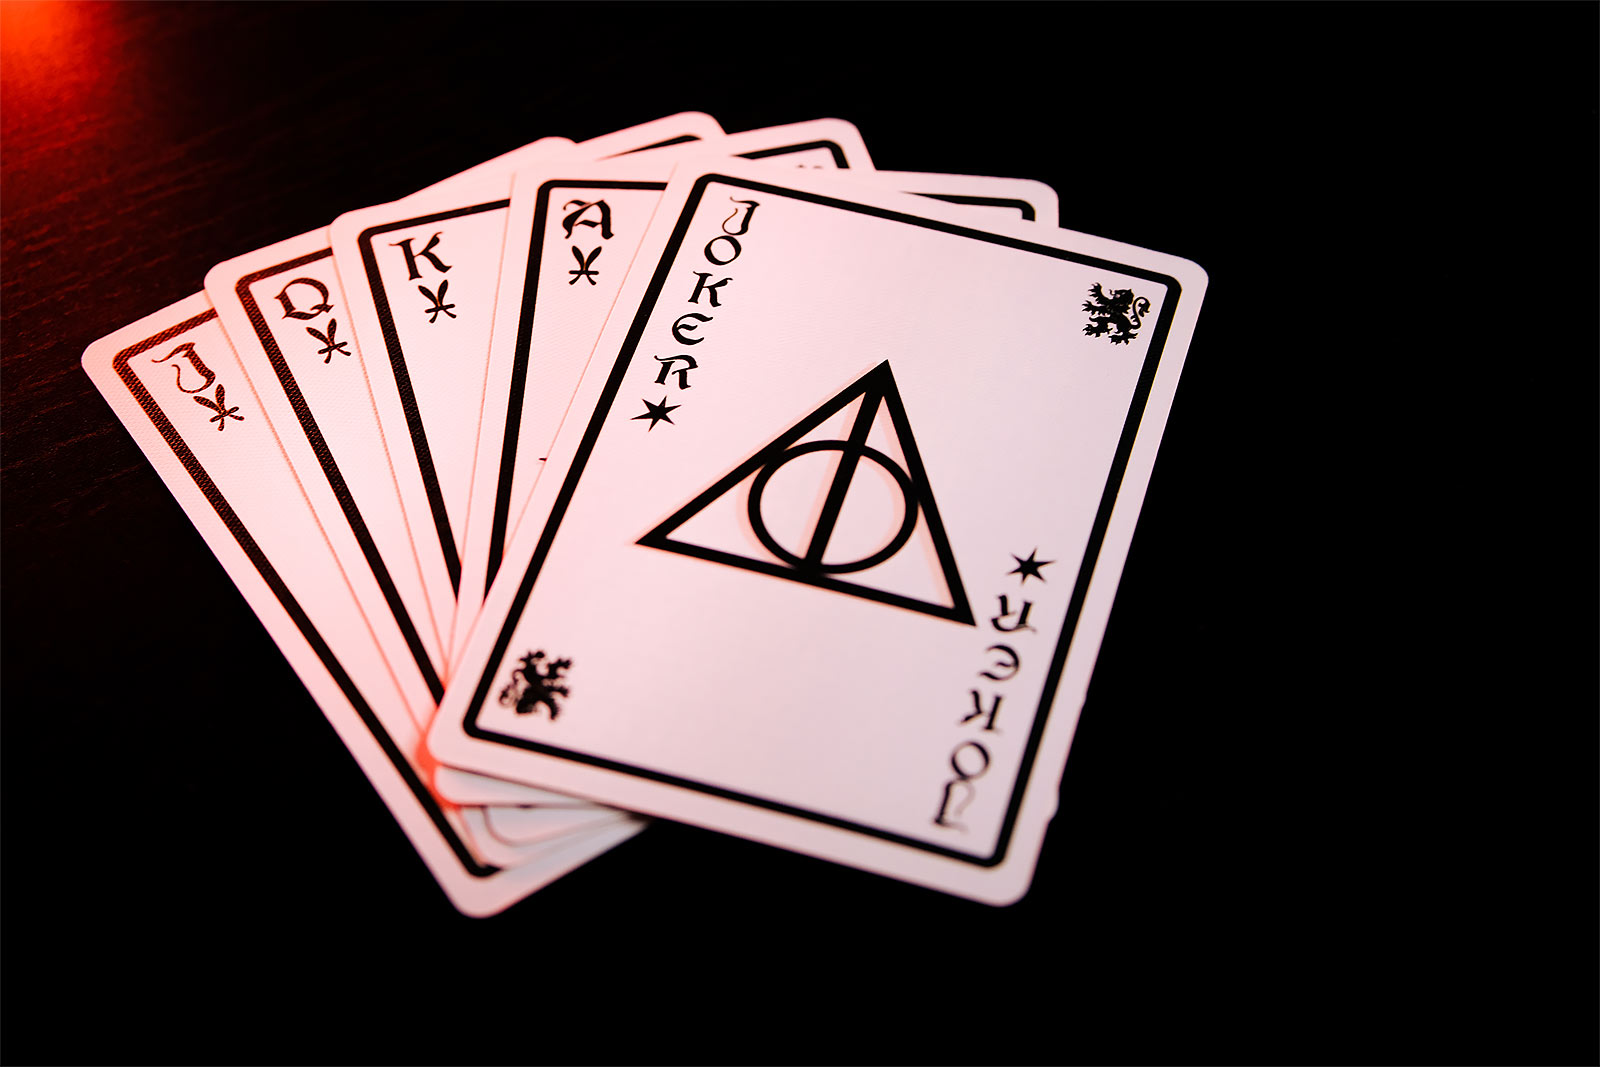 Harry Potter - Gryffindor Card Game